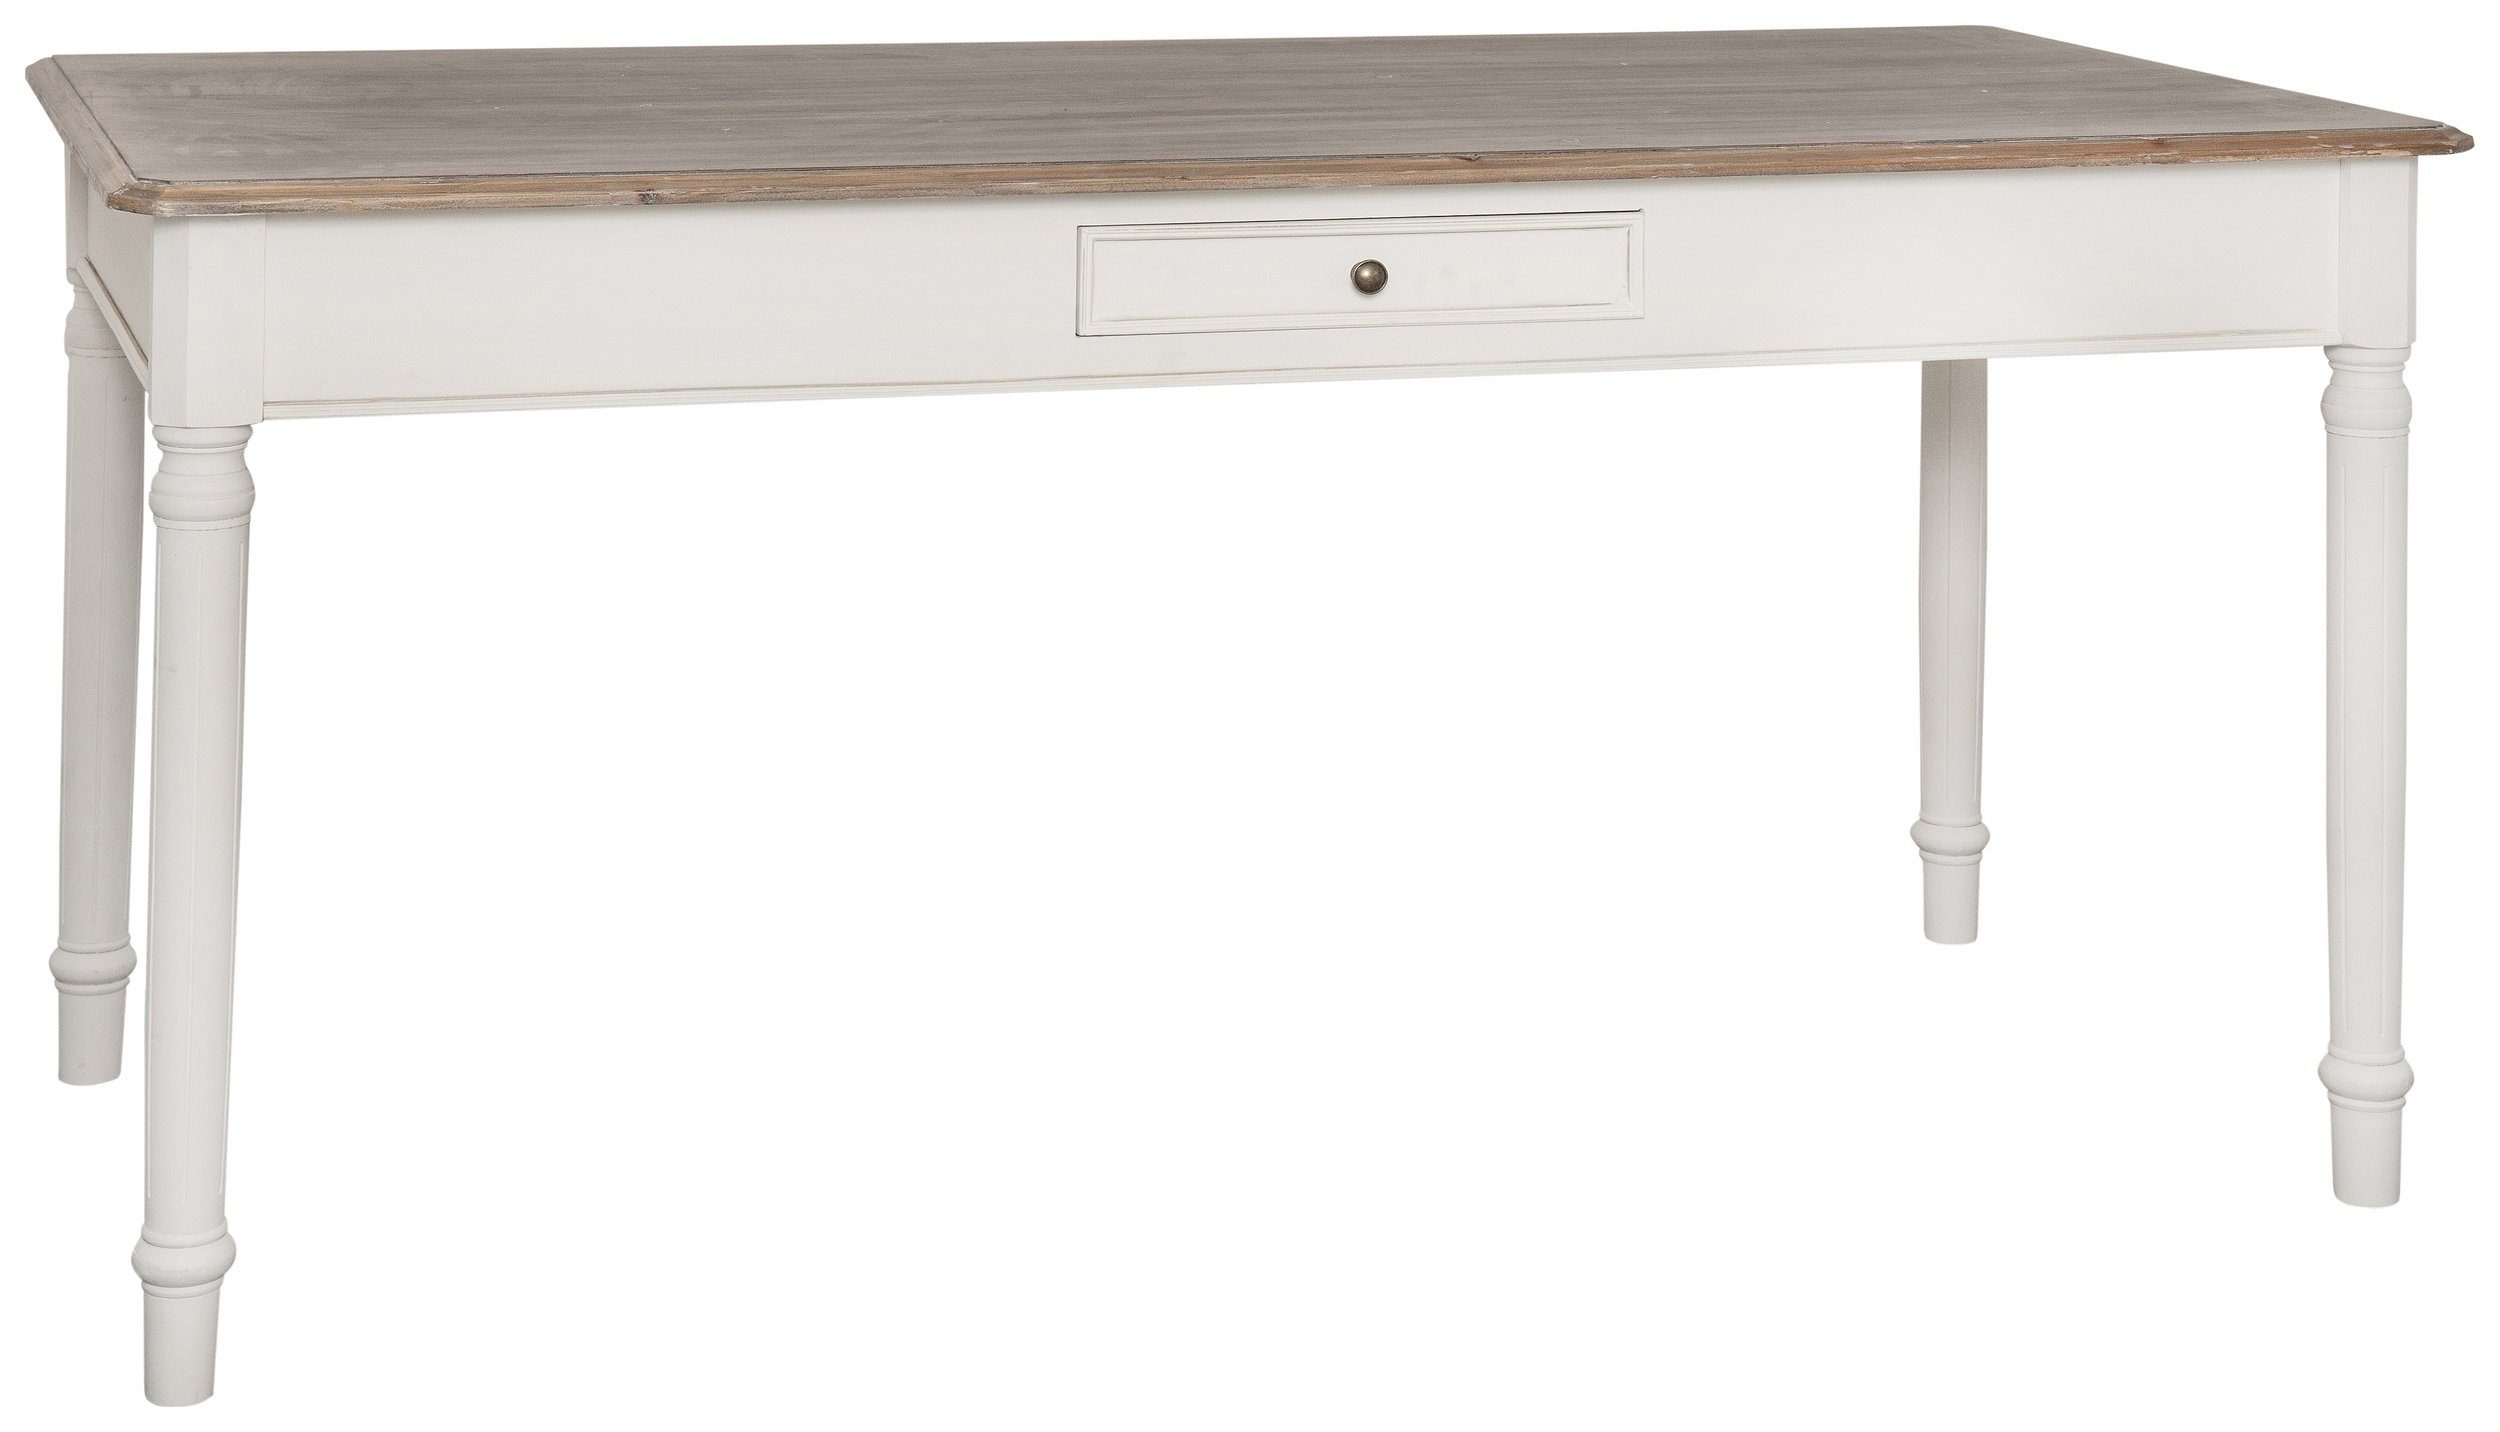 Stylefy Esstisch Ravenna Pappel Weiß Hellbraun (Esstisch, Tisch), aus Massivholz, rechteckig, mit Schublade, viel Stauraum, Landhausstil